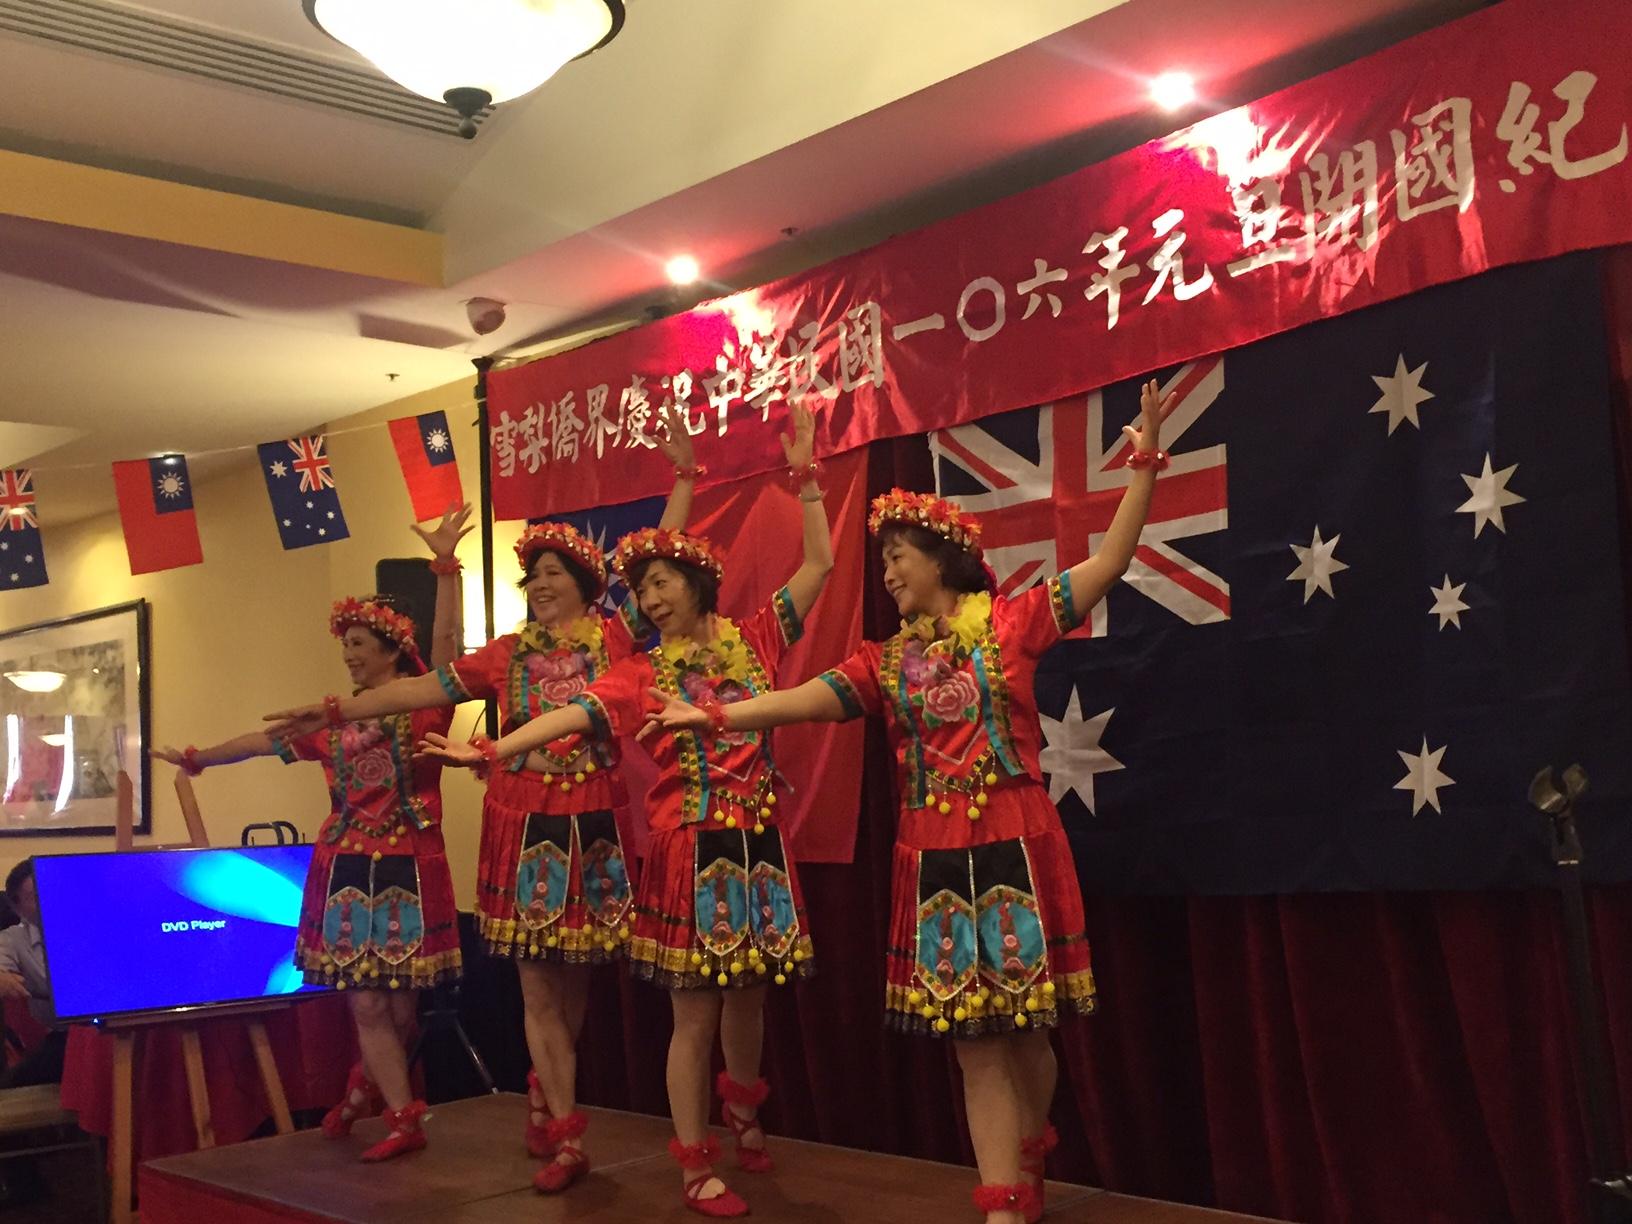 2017年1月1日雪梨升旗典禮舞蹈團體表演臺灣知名歌曲「高山青」